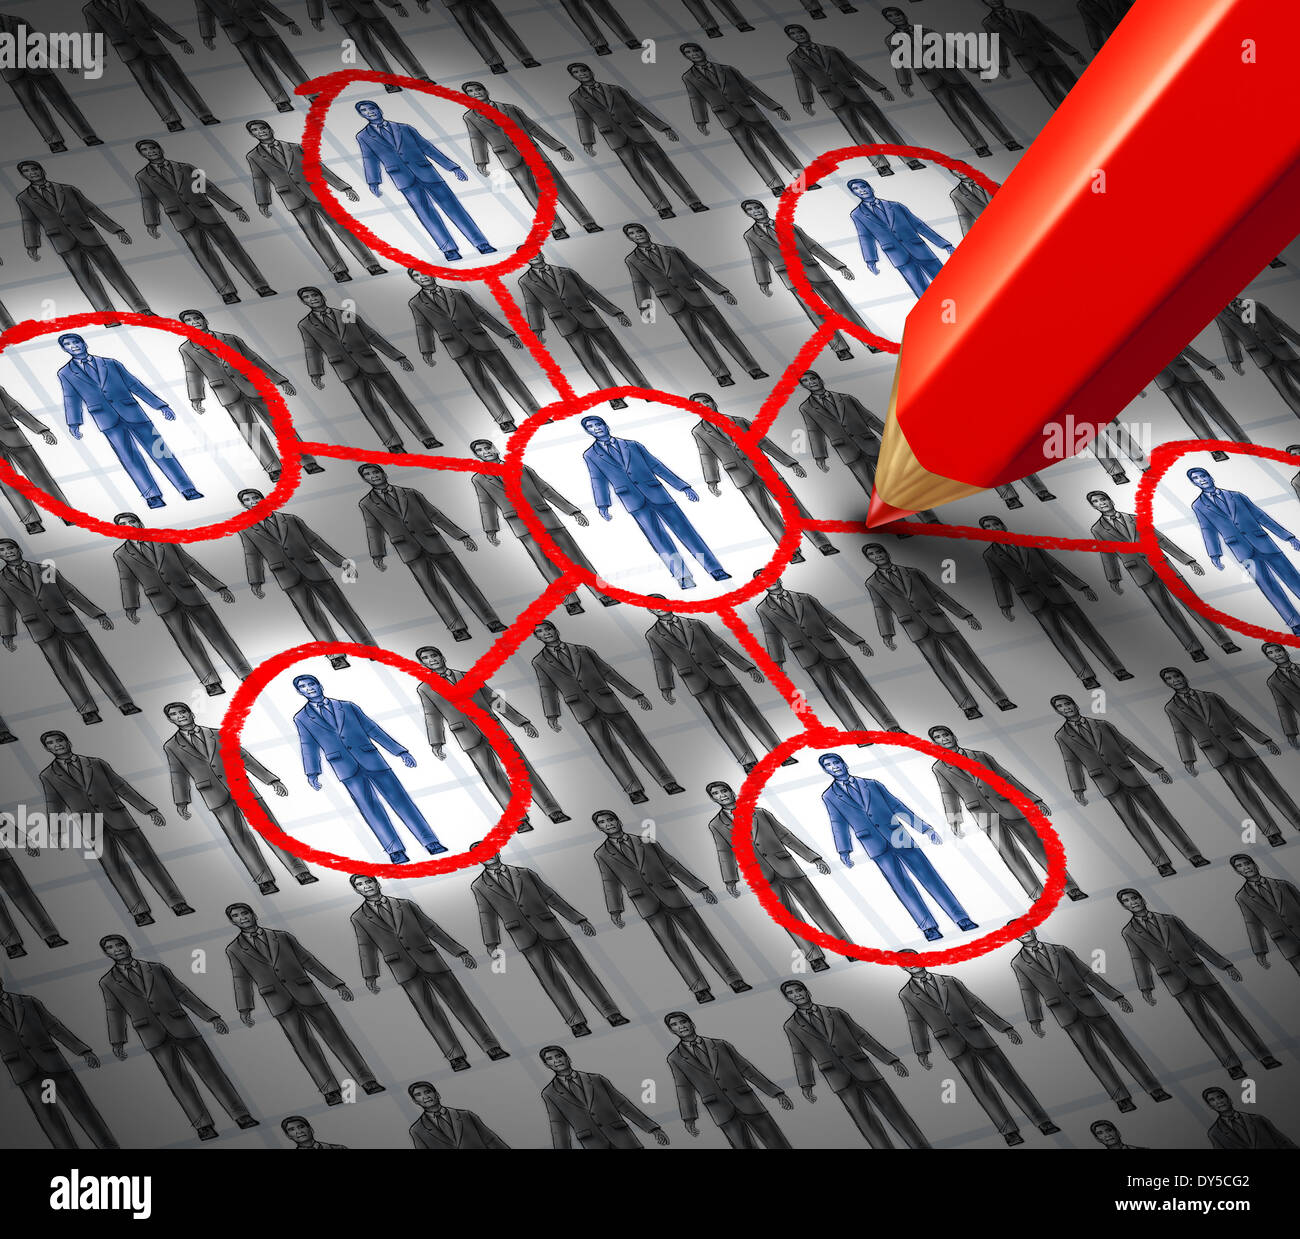 Des ressources d'affaires connexion concept comme un infographique dessin d'un groupe de gens d'affaires génériques symboles avec certains qui sont mis en évidence avec un crayon rouge comme une métaphore pour la construction de liens sociaux. Banque D'Images